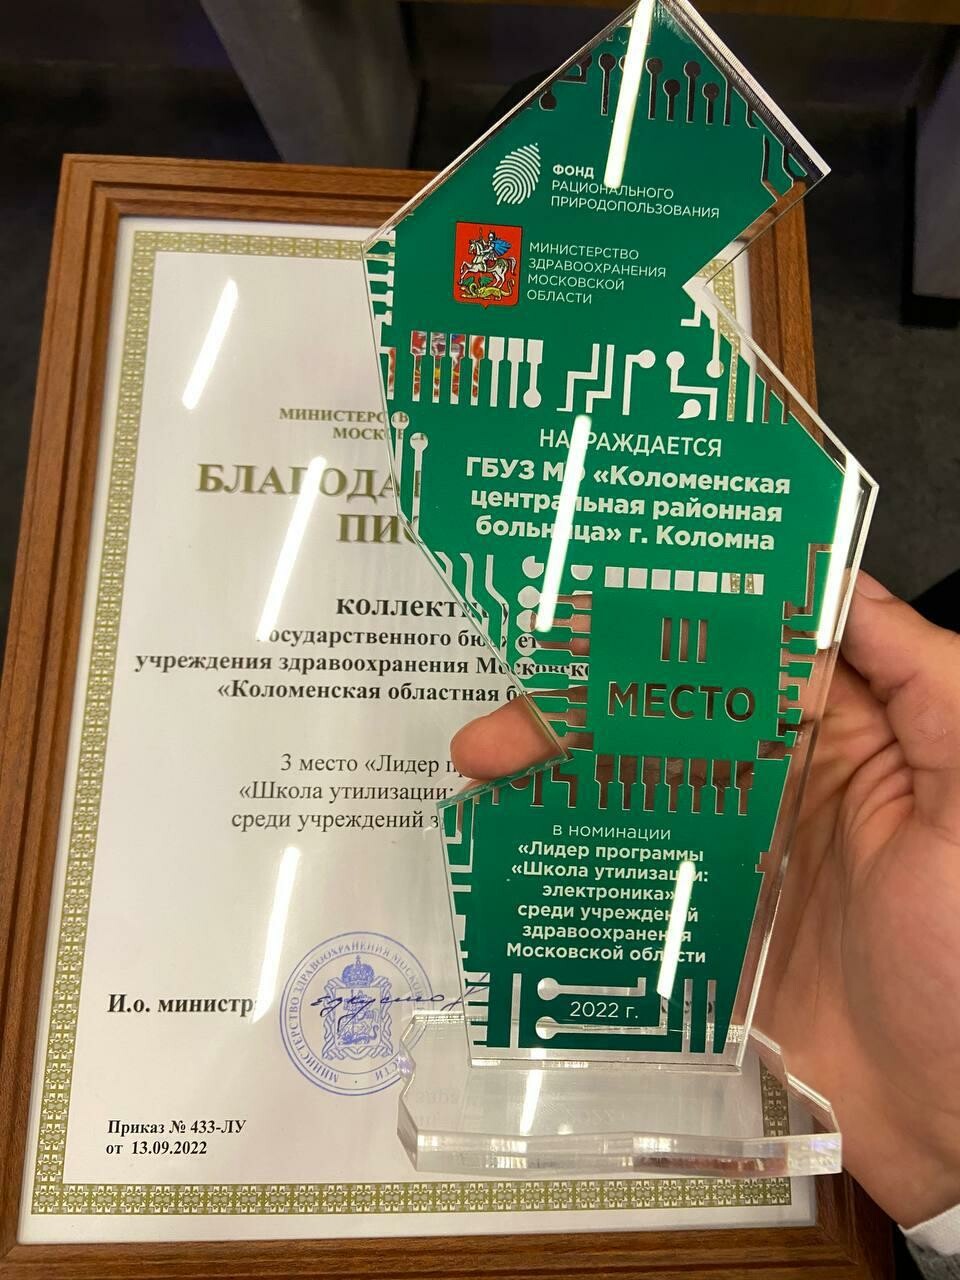 Коломна получила сразу несколько наград за участие в программе «Школа утилизации: электроника» по итогам 2021 года